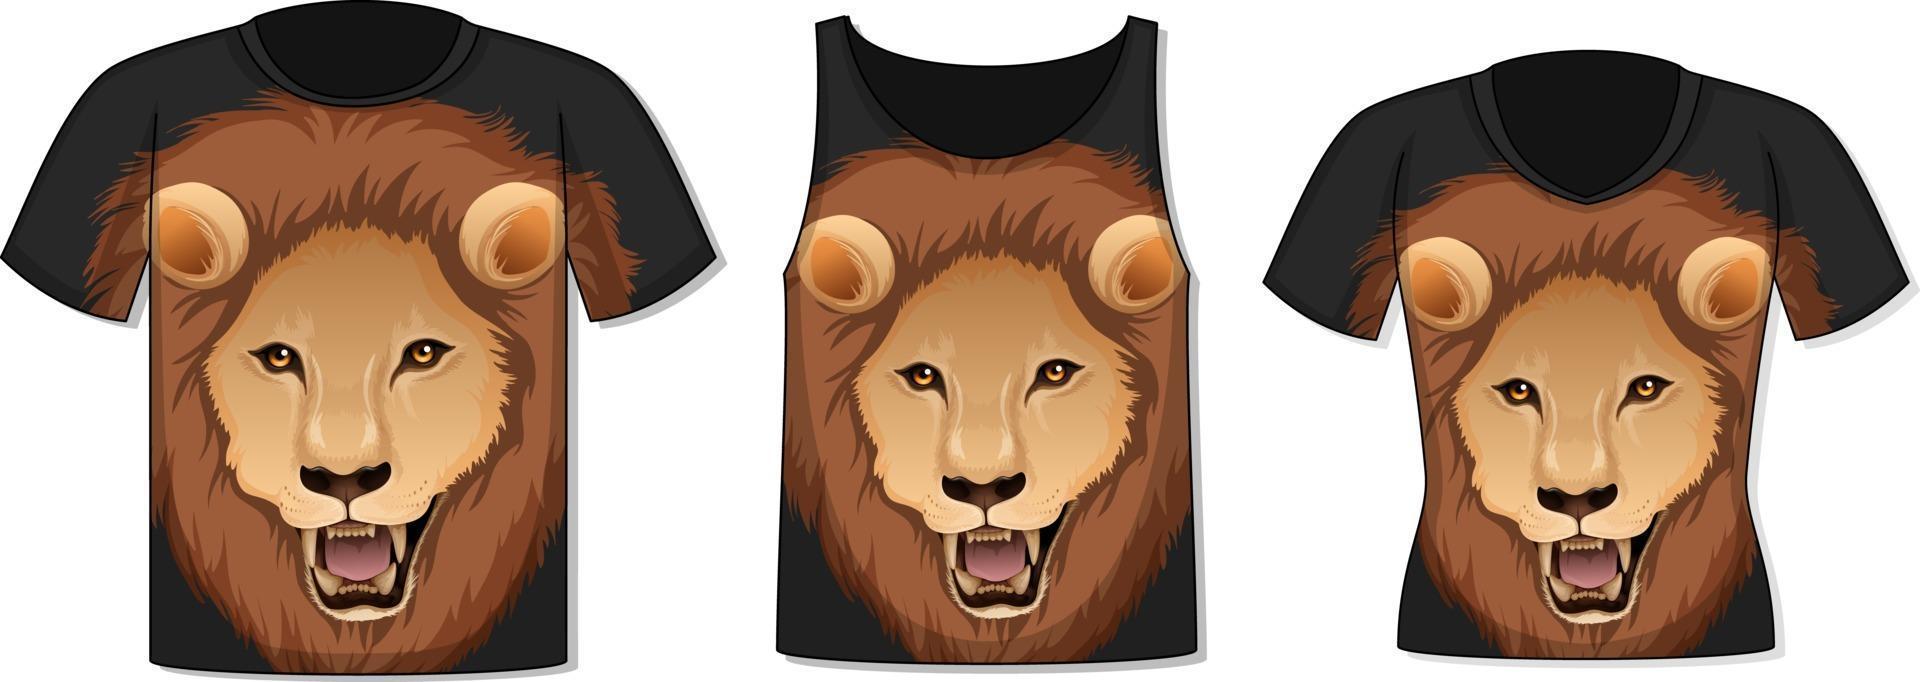 frente da camiseta com modelo de rosto de leão vetor